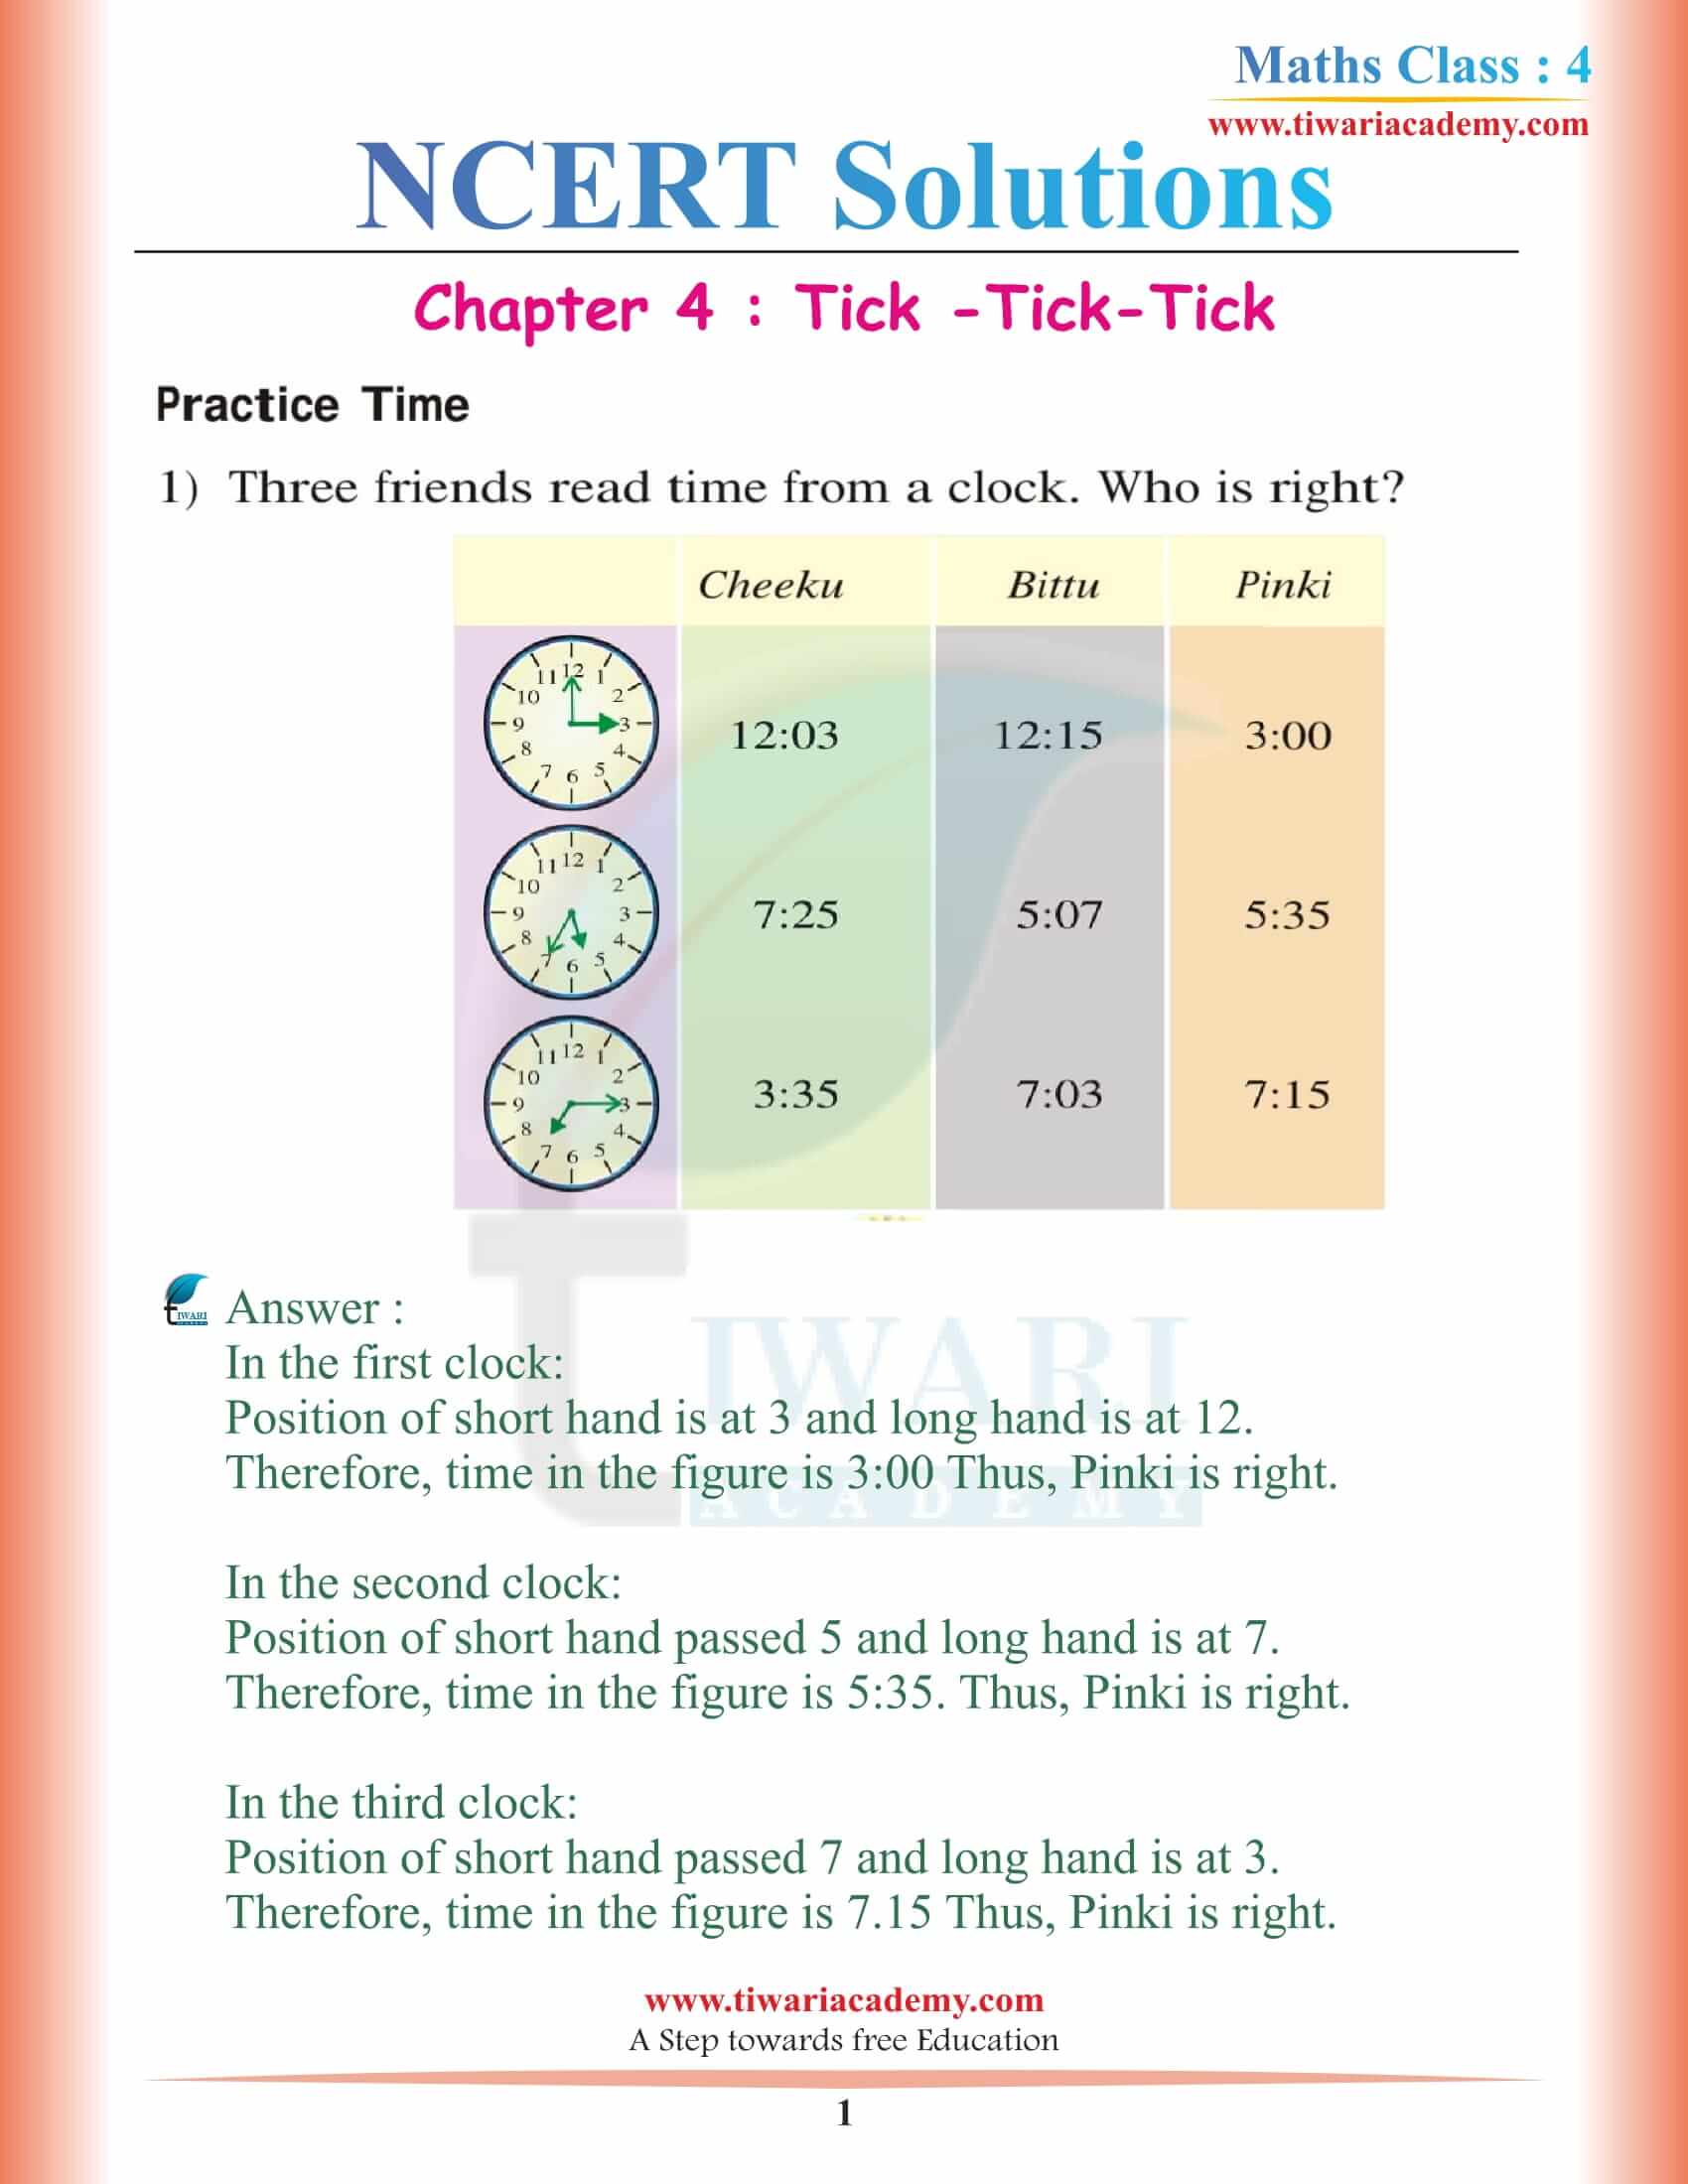 NCERT Solutions for Class 4 Maths Chapter 4 Tick-Tick-Tick